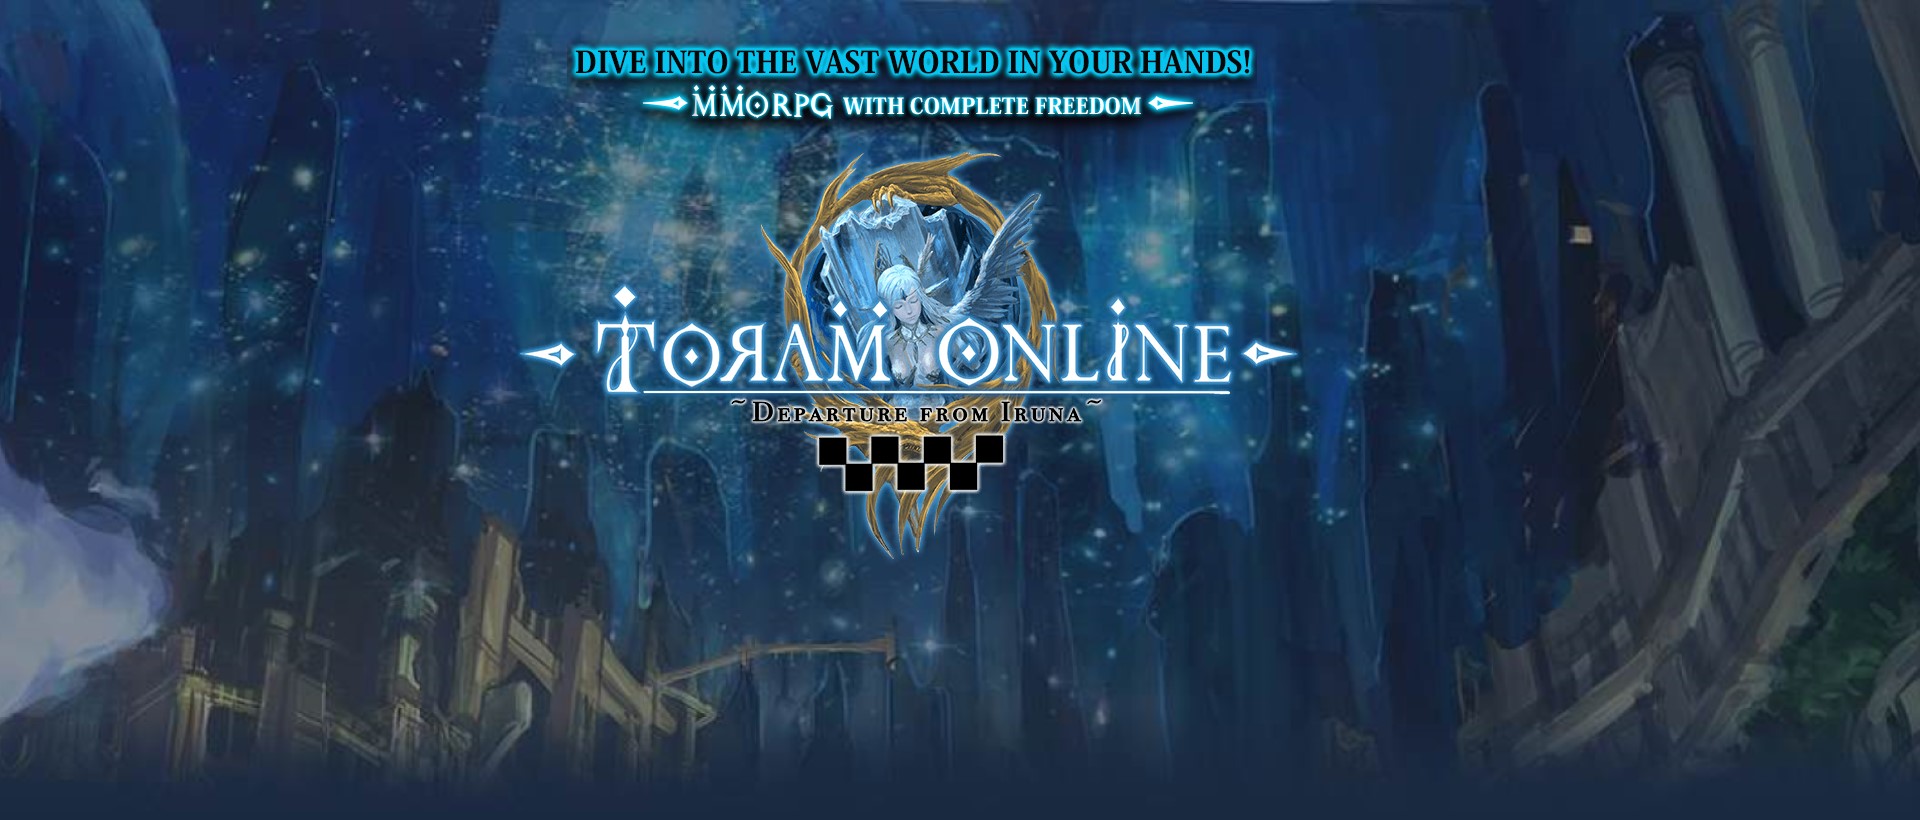 toram online pc download easy ipadian